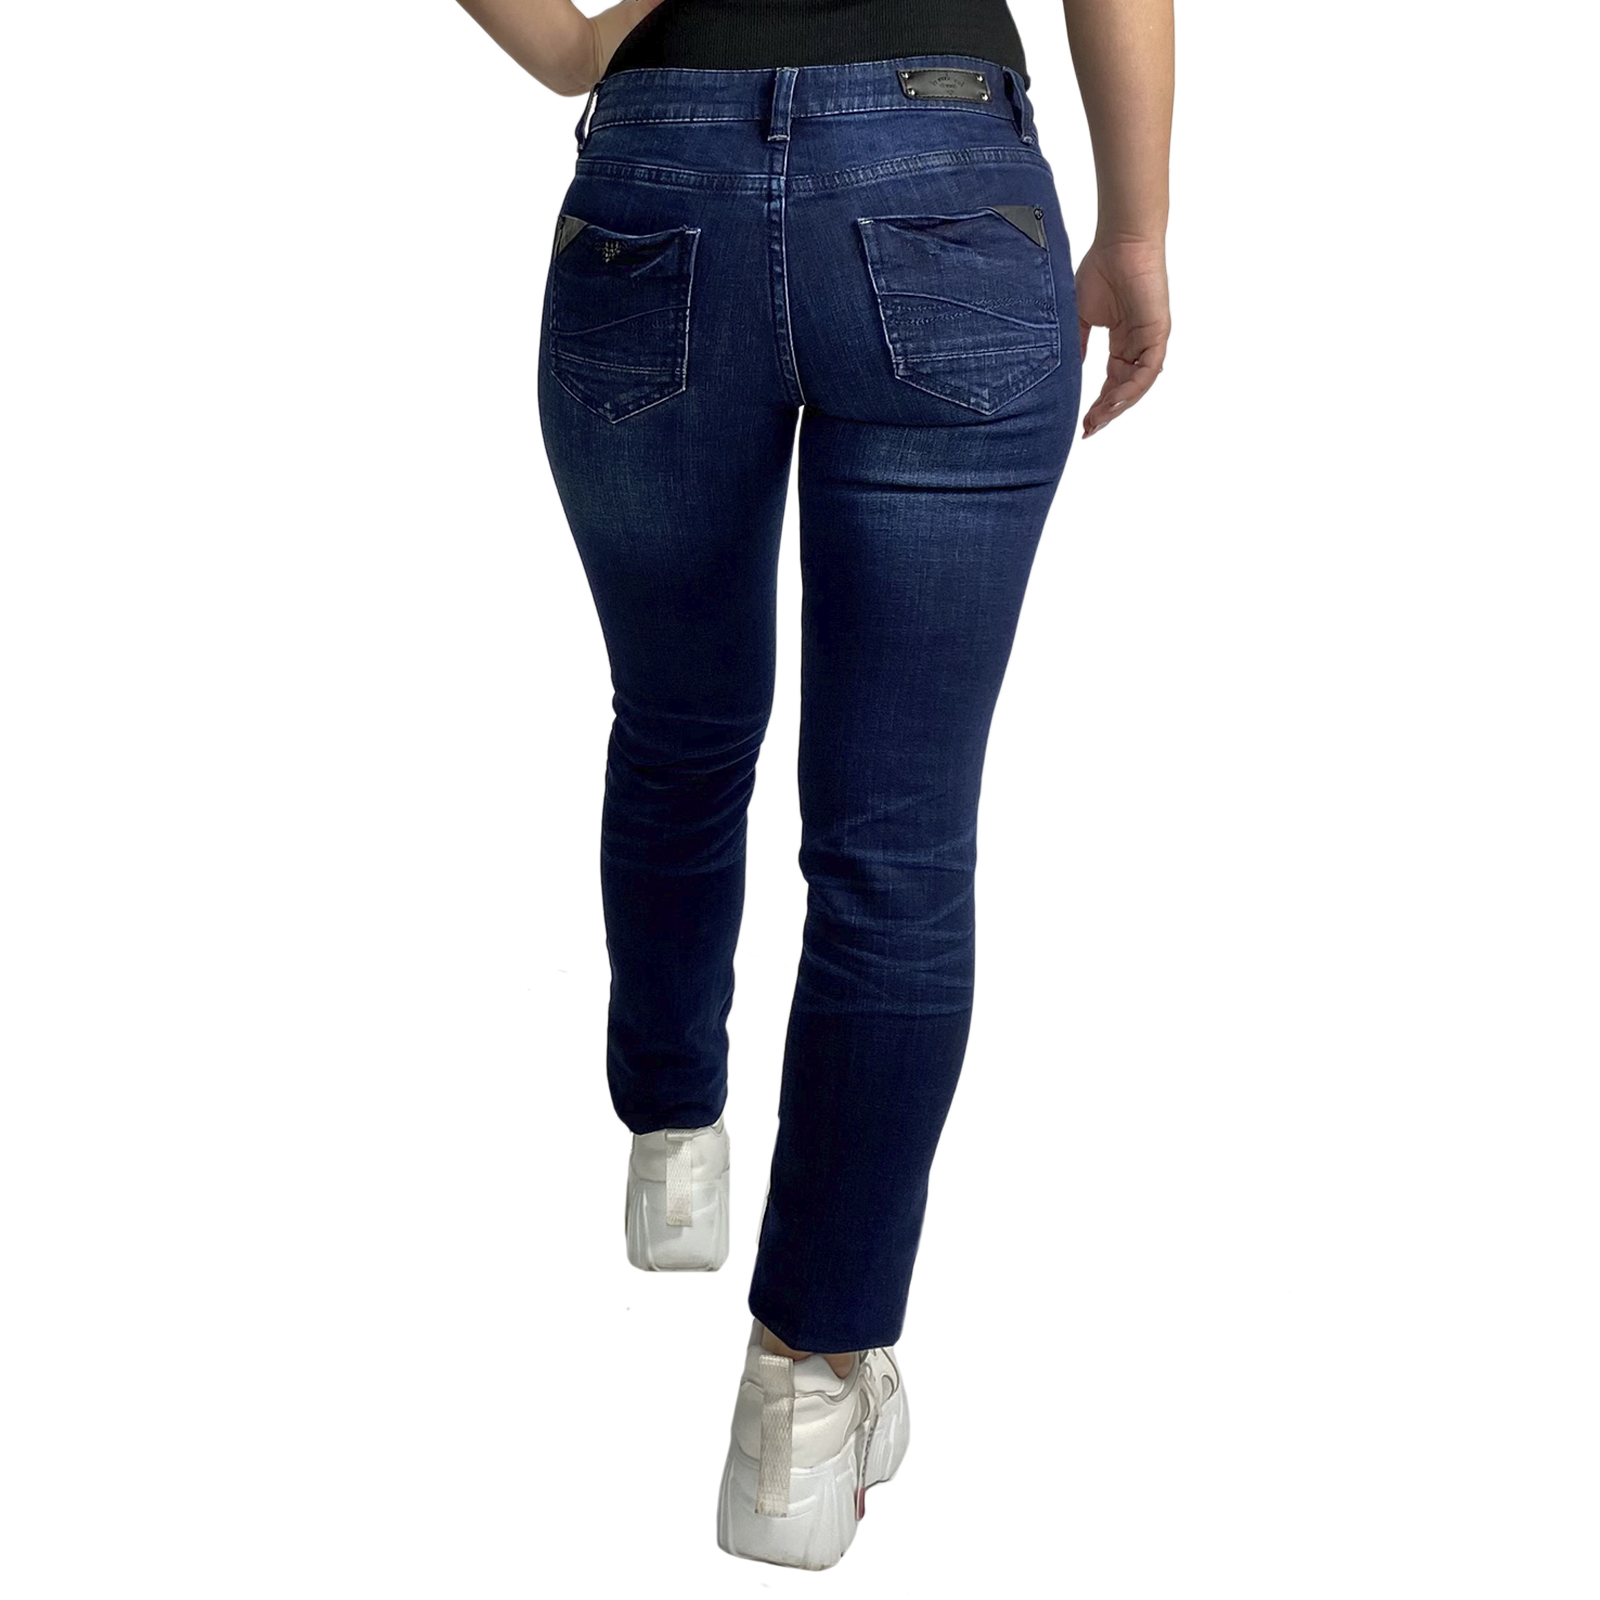 Недорогие женские джинсы – популярный прямой крой, качественный деним, супер цена